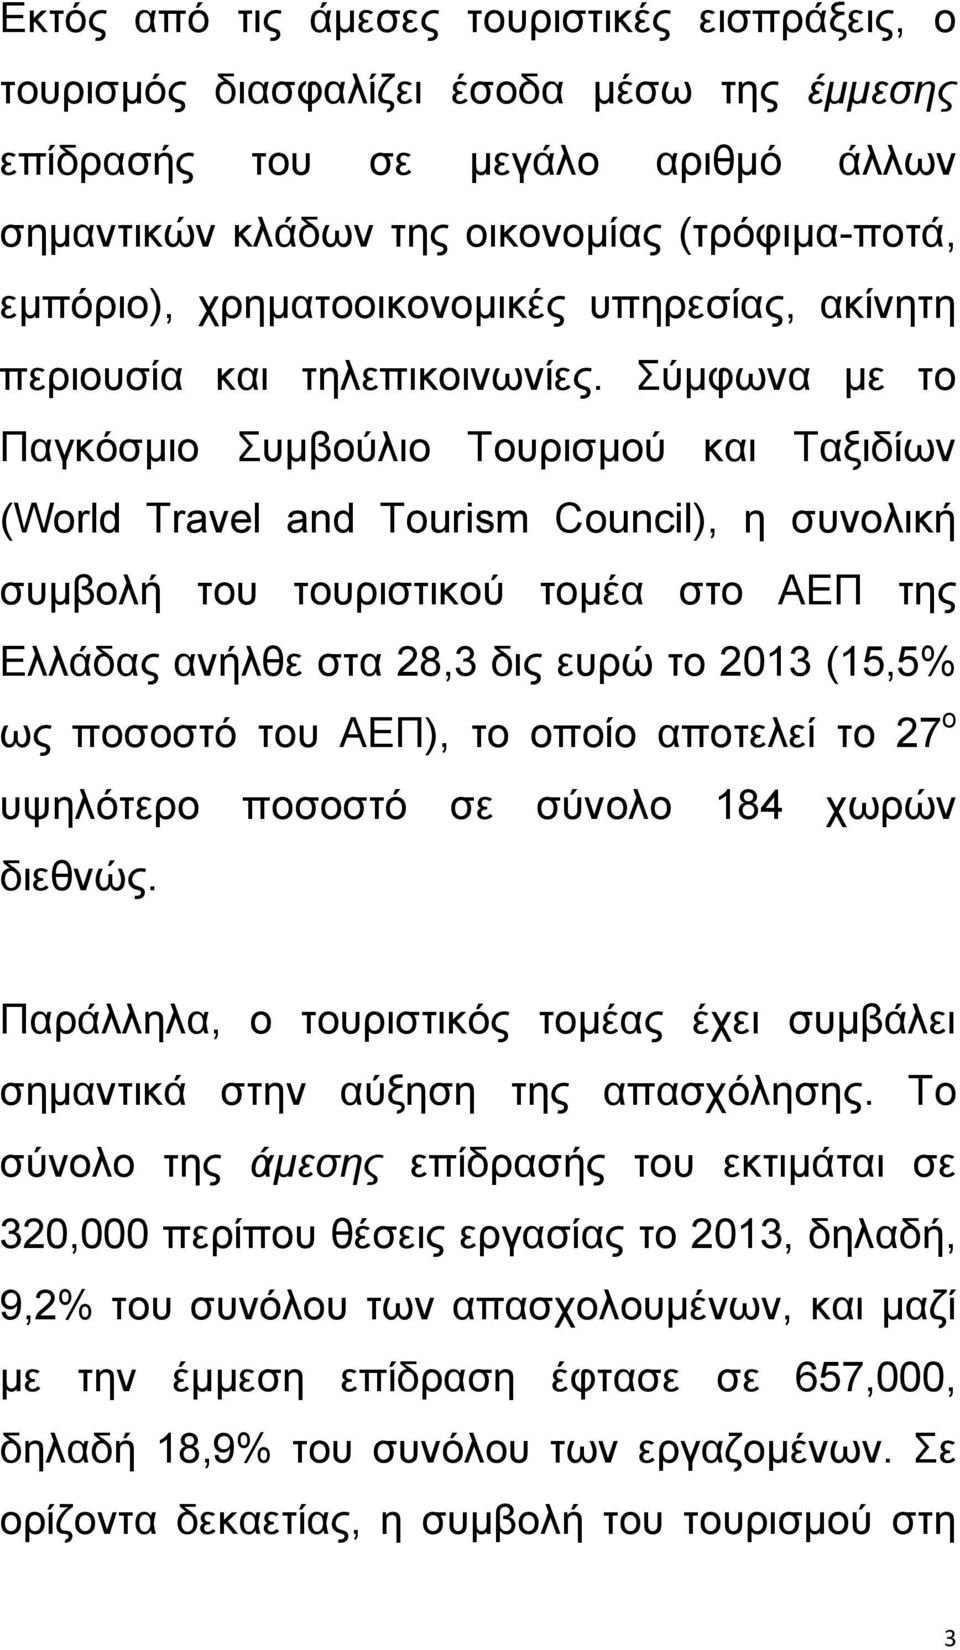 χκθσλα κε ην Παγθφζκην πκβνχιην Σνπξηζκνχ θαη Σαμηδίσλ (World Travel and Tourism Council), ε ζπλνιηθή ζπκβνιή ηνπ ηνπξηζηηθνχ ηνκέα ζην ΑΕΠ ηεο Ειιάδαο αλήιζε ζηα 28,3 δηο επξψ ην 2013 (15,5% σο